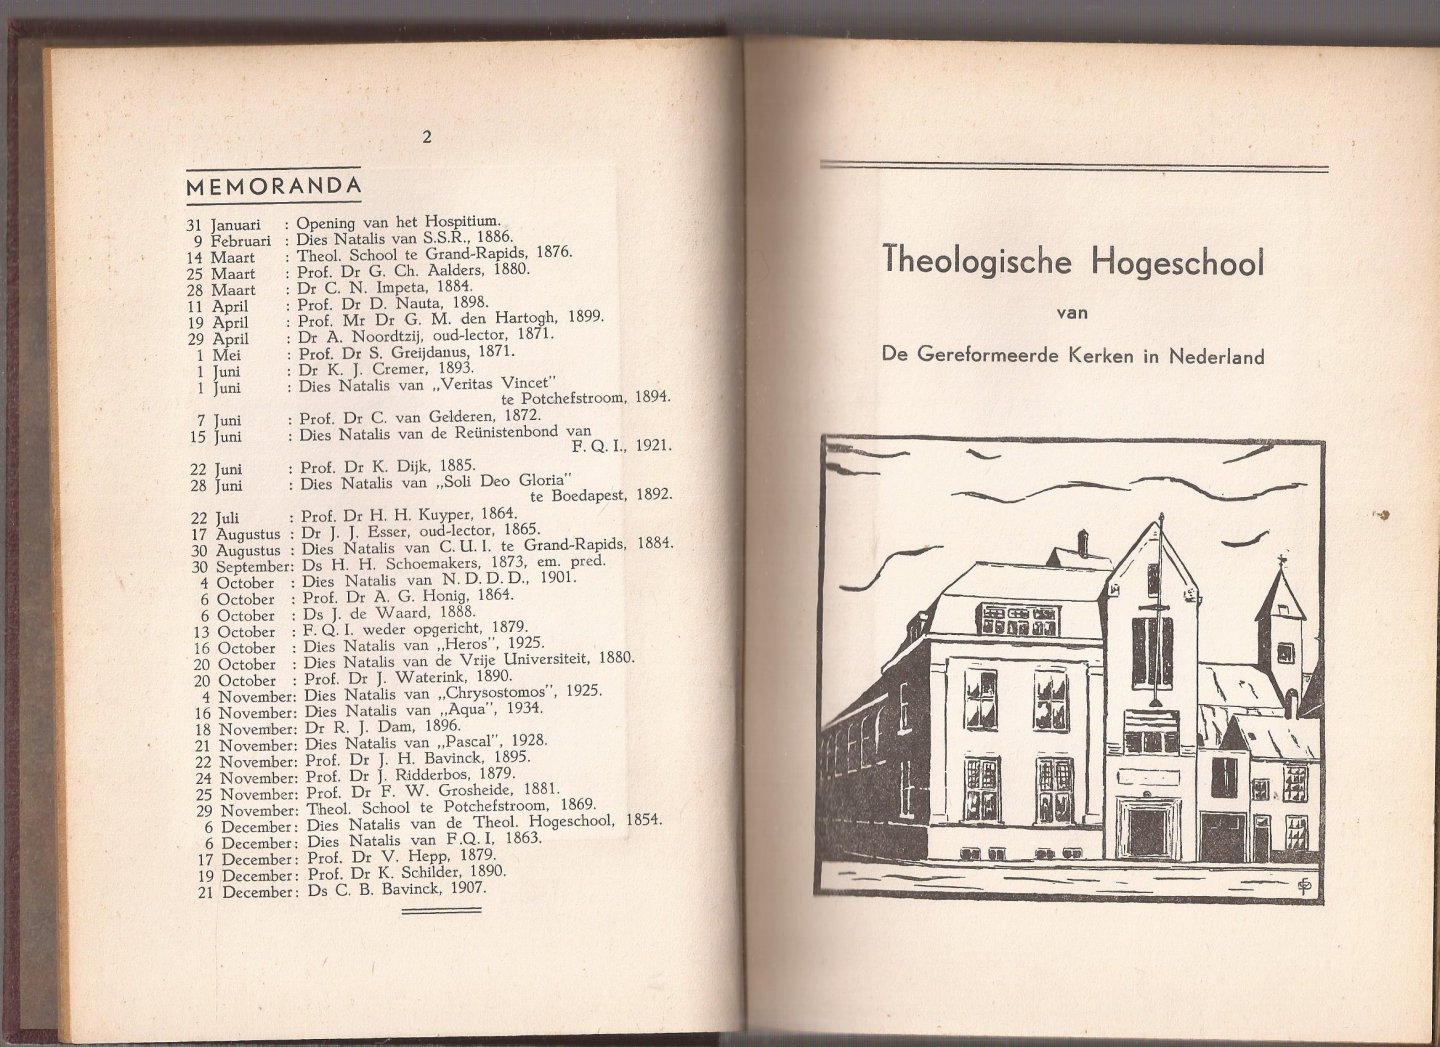  - Almanak van het studentencorps "Fides Quærit Intellectum" voor het jaar 1941. 49e Jaargang.